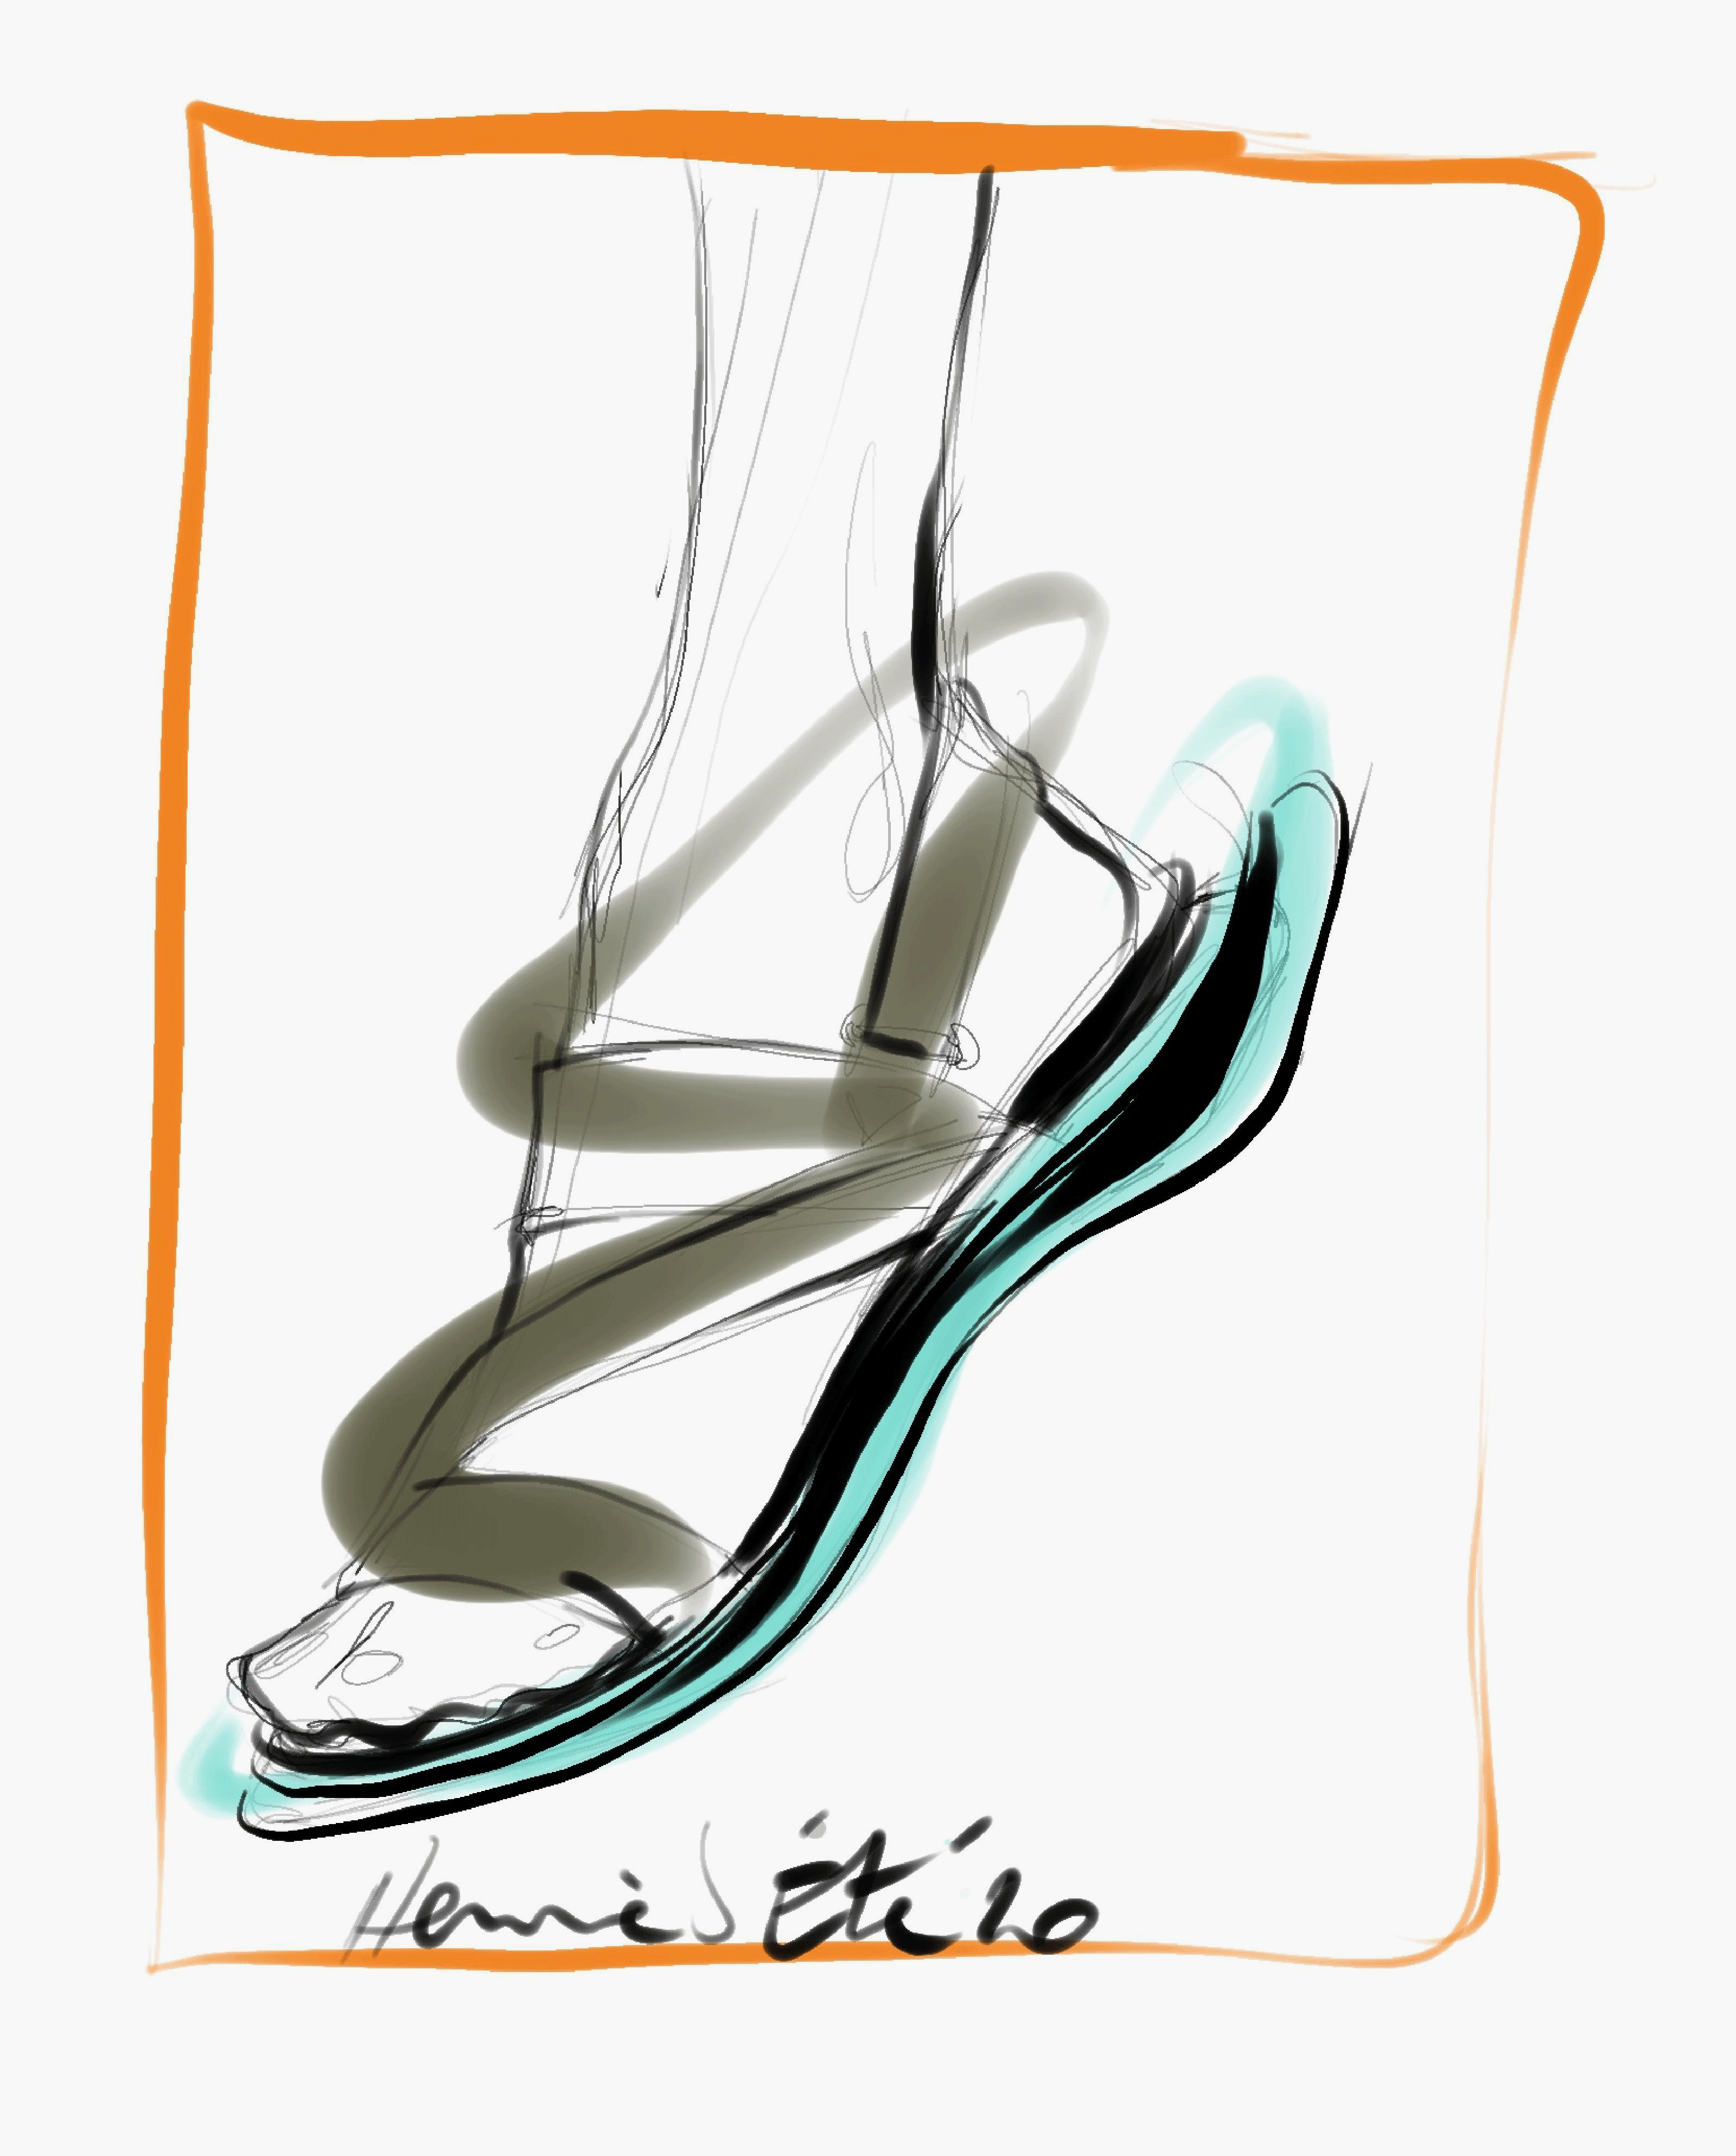  Hermès Athenes sandal sketch by Pierre Hardy